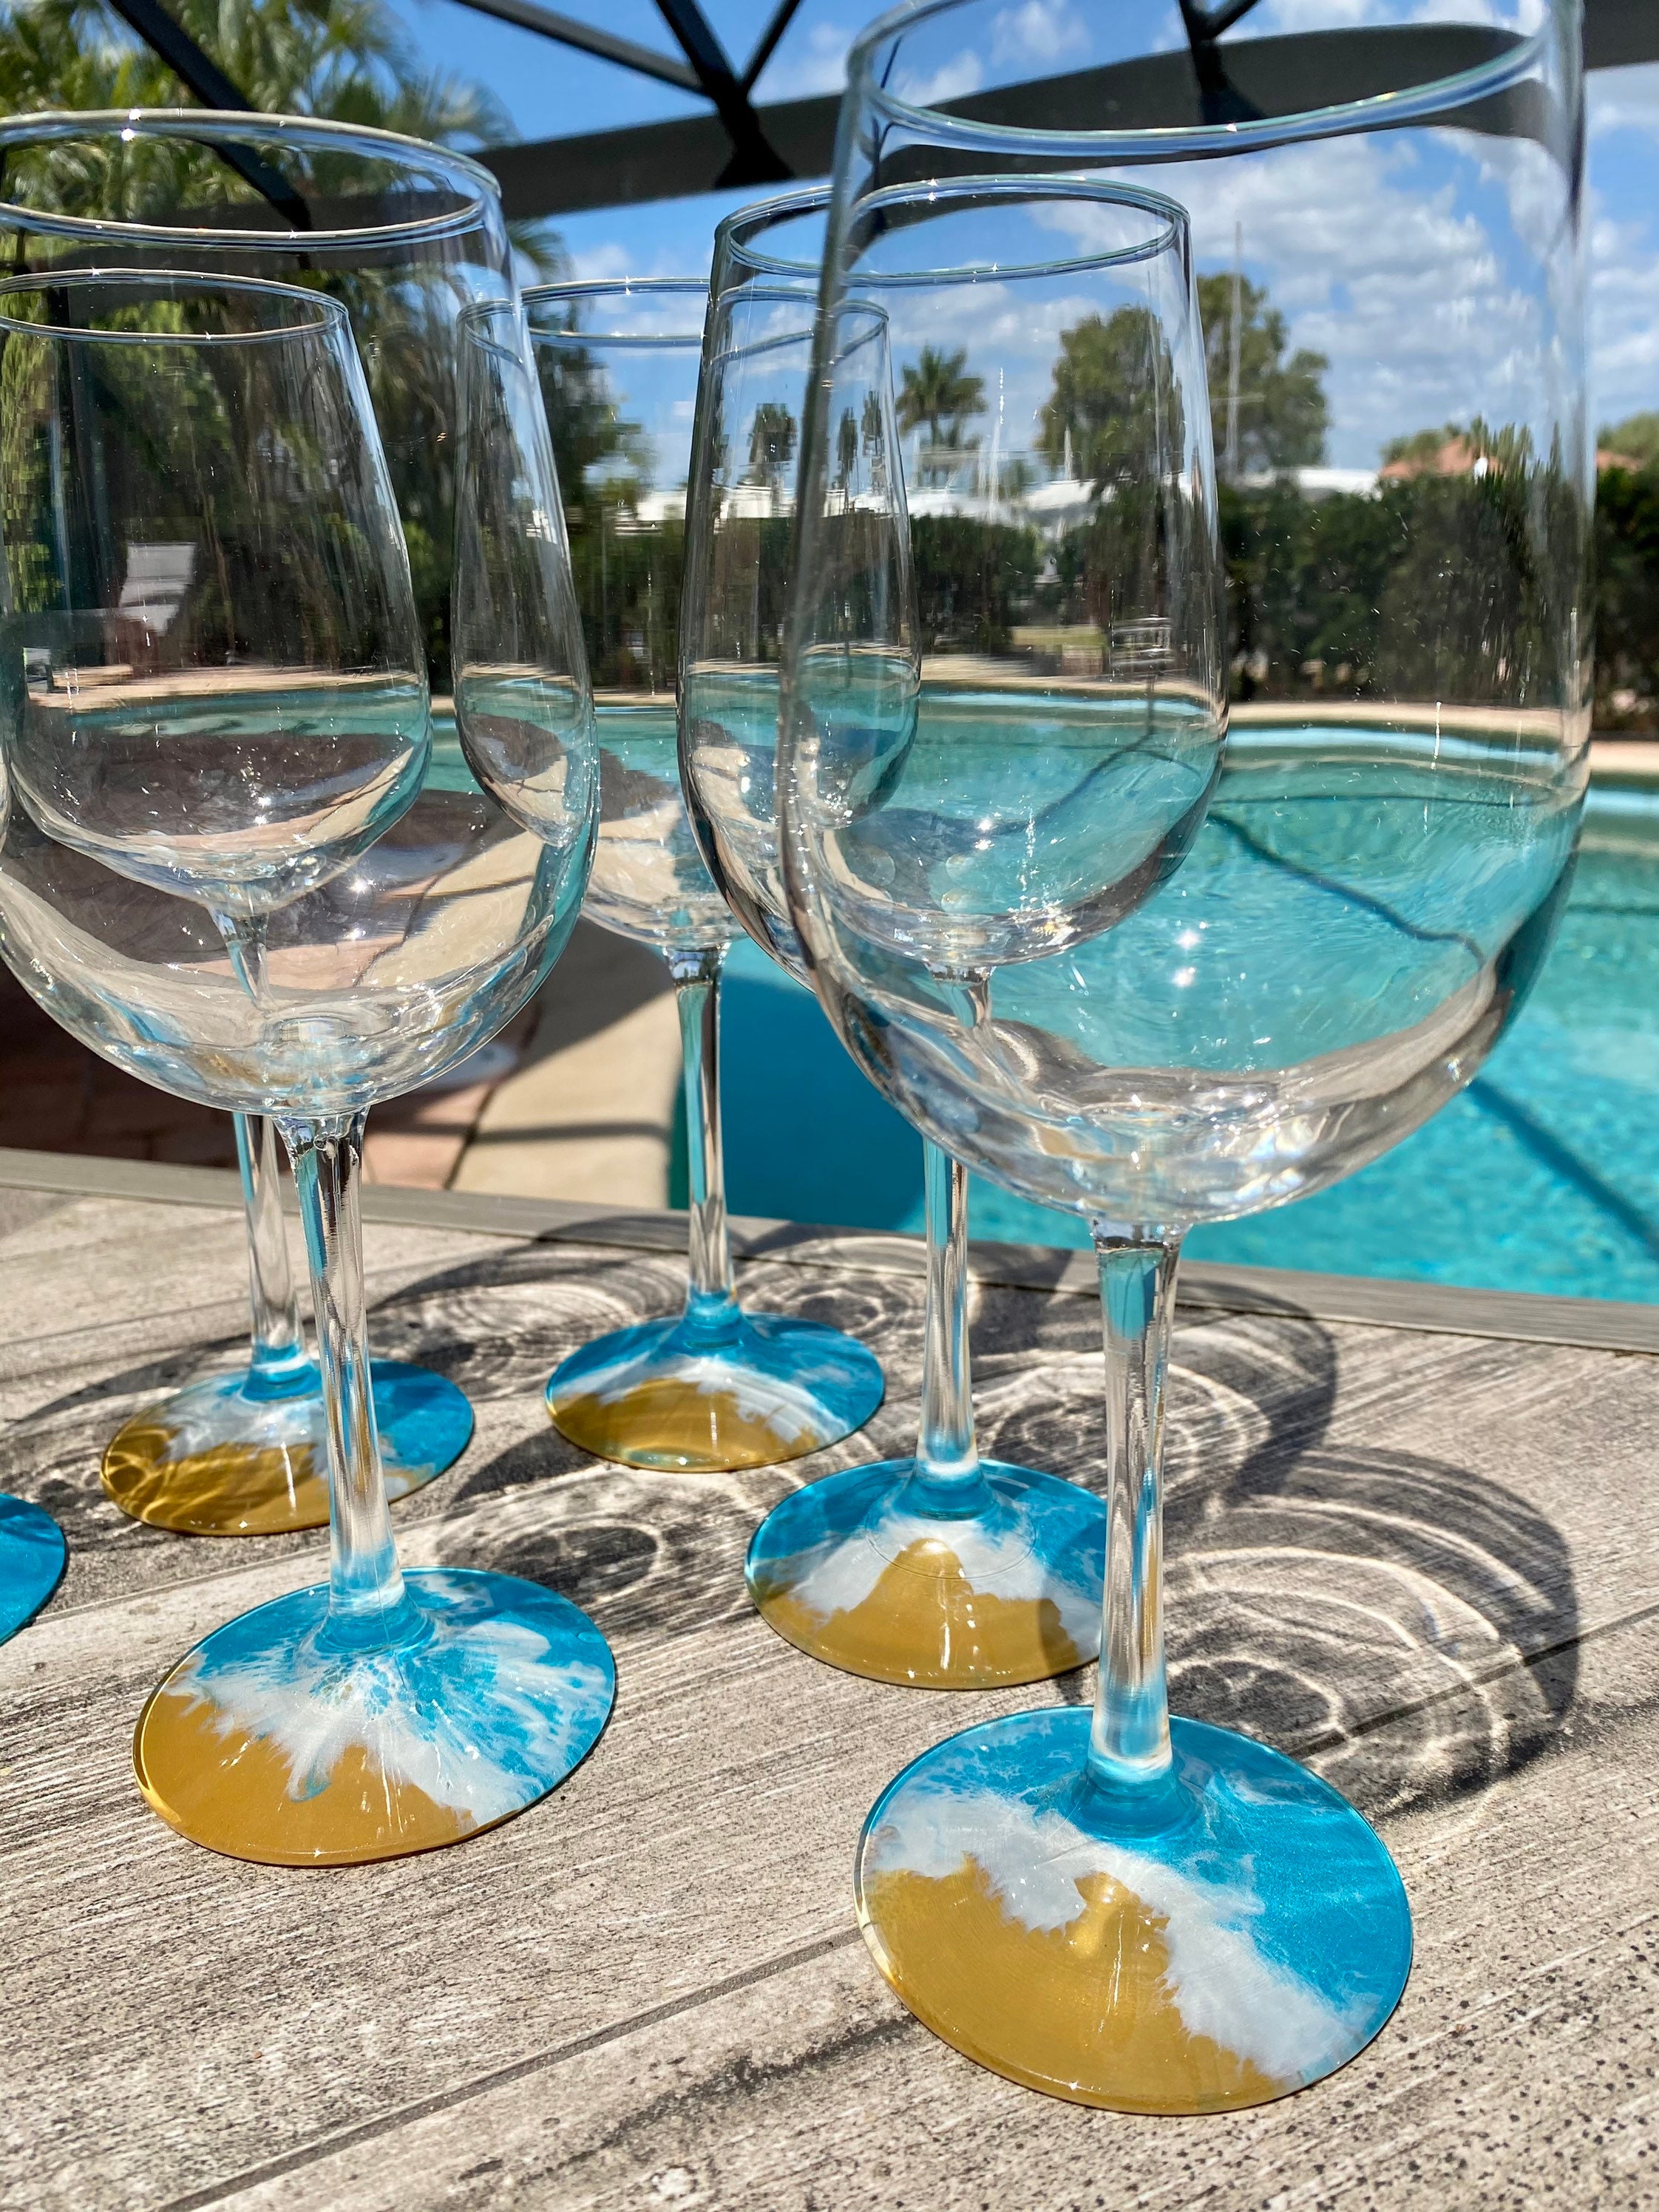 Swarovski Wine Glass, Set of 2 - Crystocraft